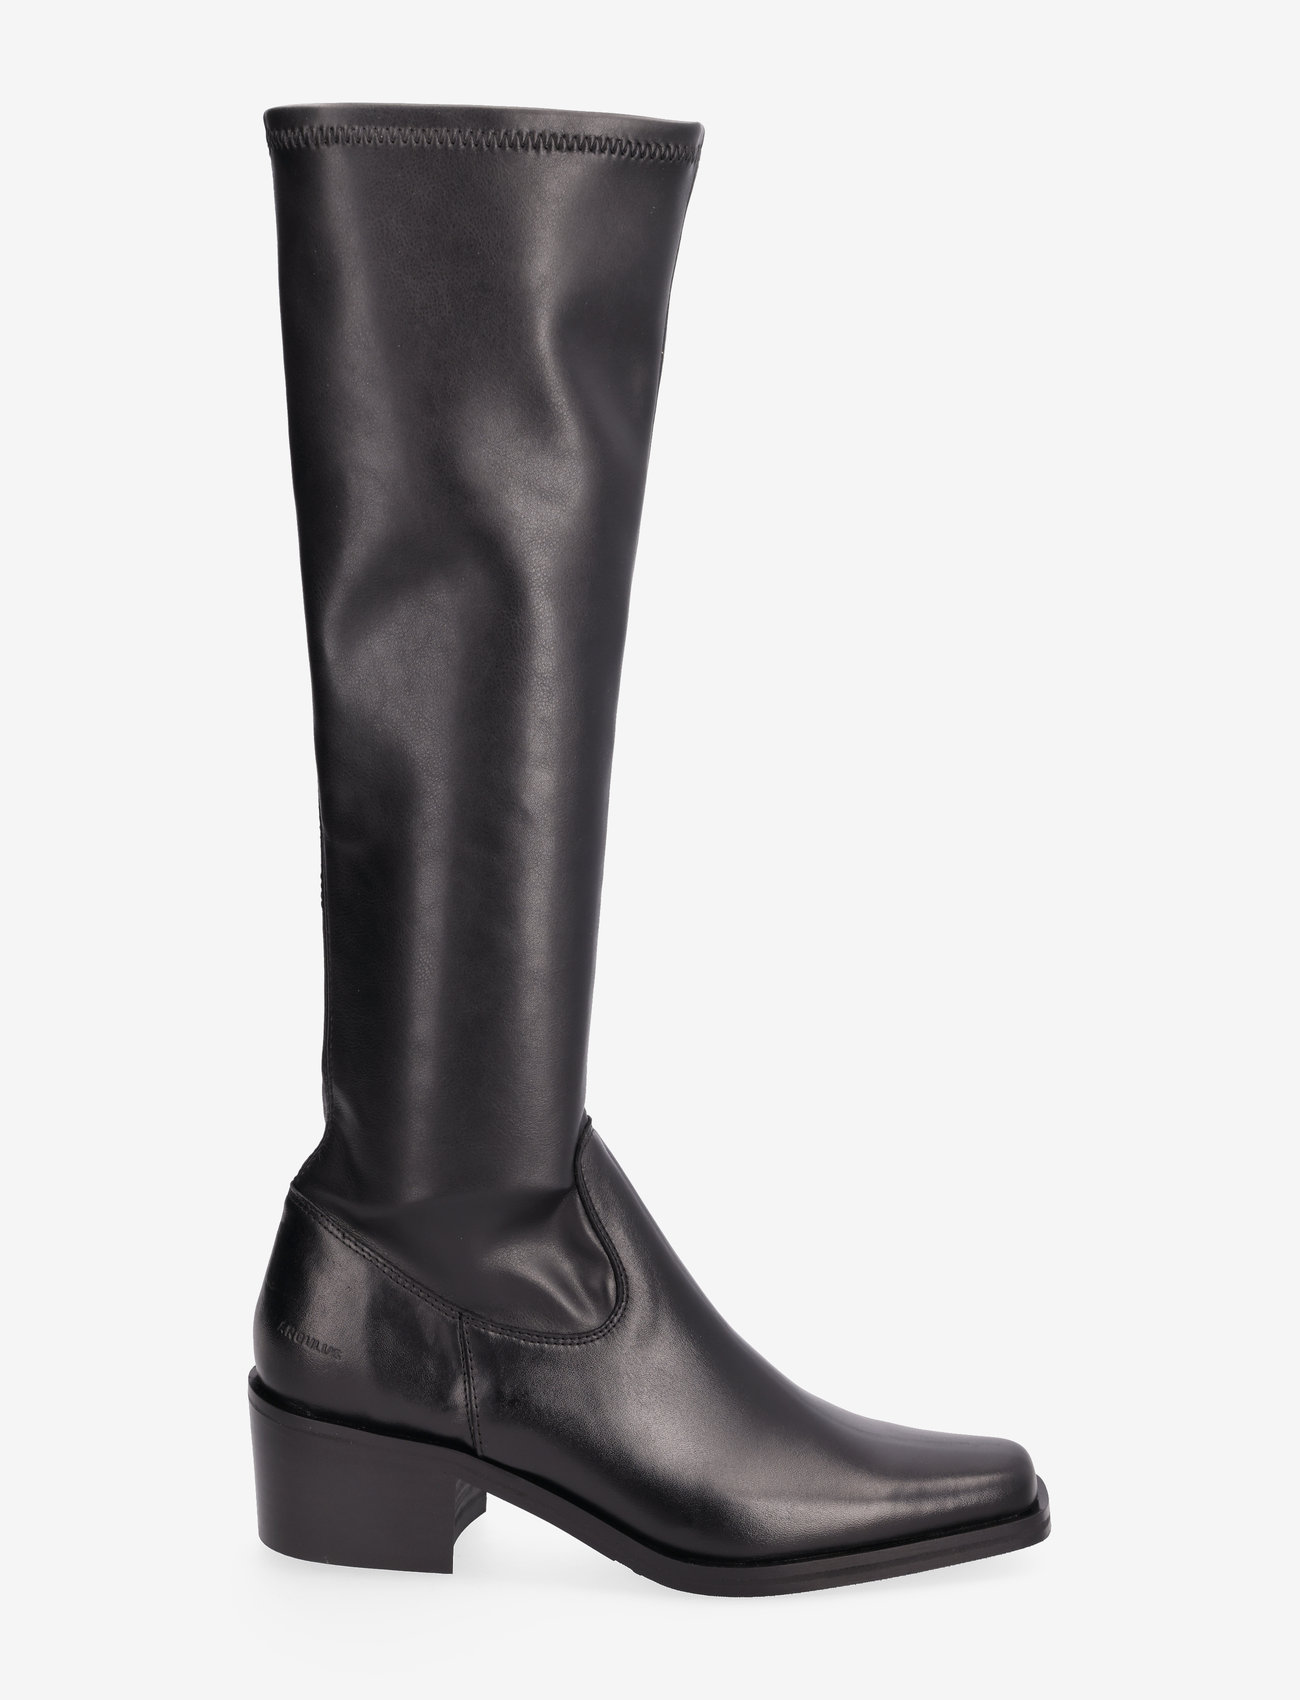 ANGULUS - Boots - Block heel - pika säärega saapad - 1604/1746 black/black - 1